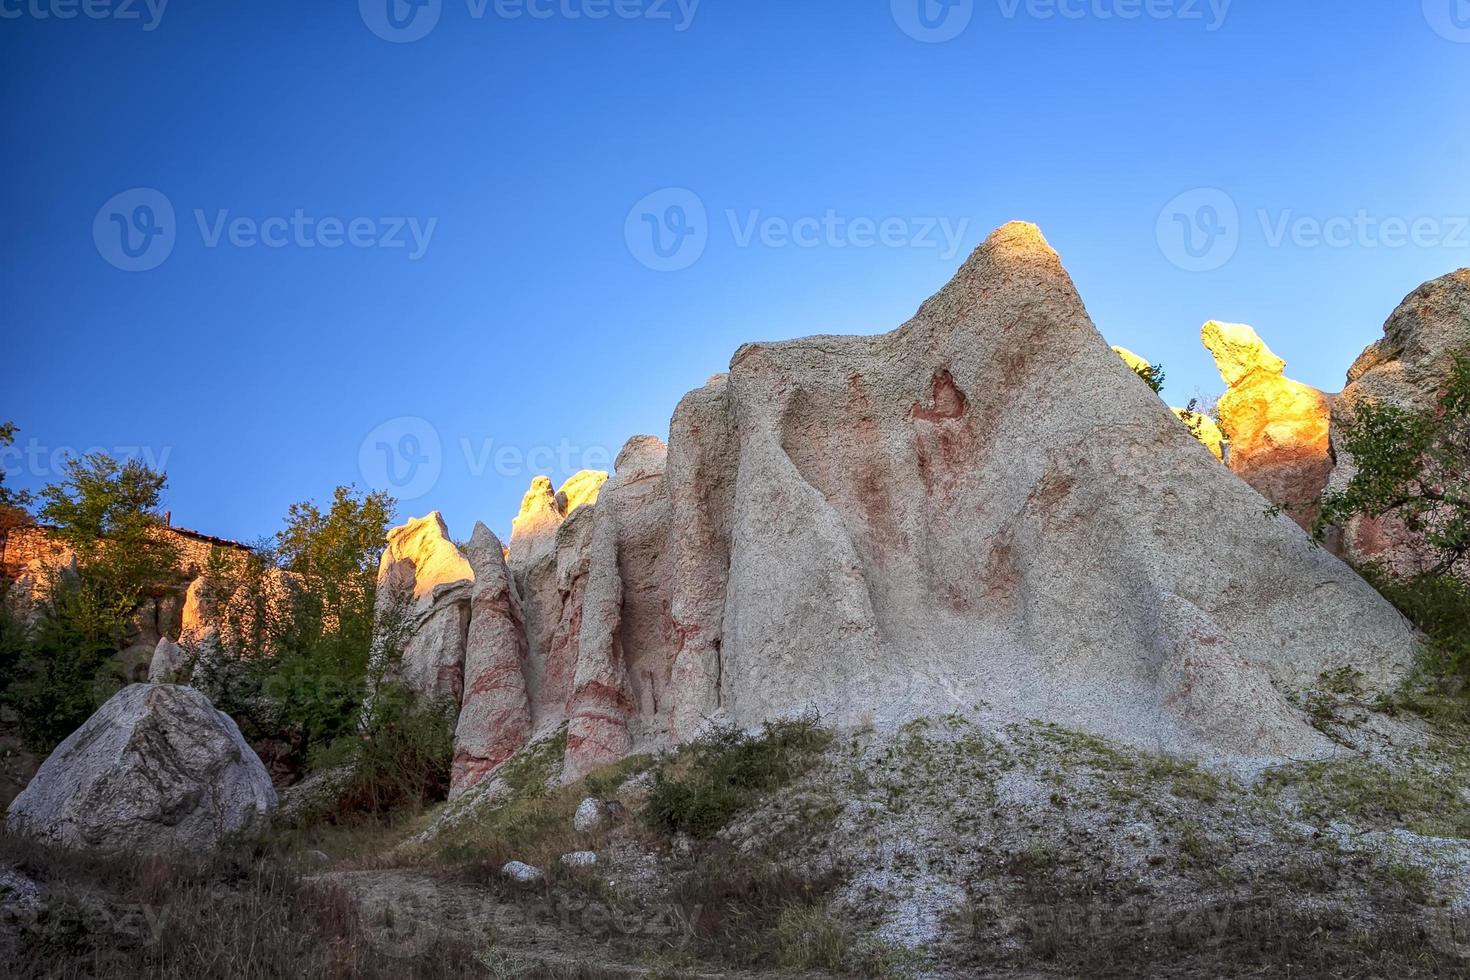 de natuurlijk fenomeen kamenna svatba of de steen bruiloft in de buurt stad kardzjali, bulgarije foto